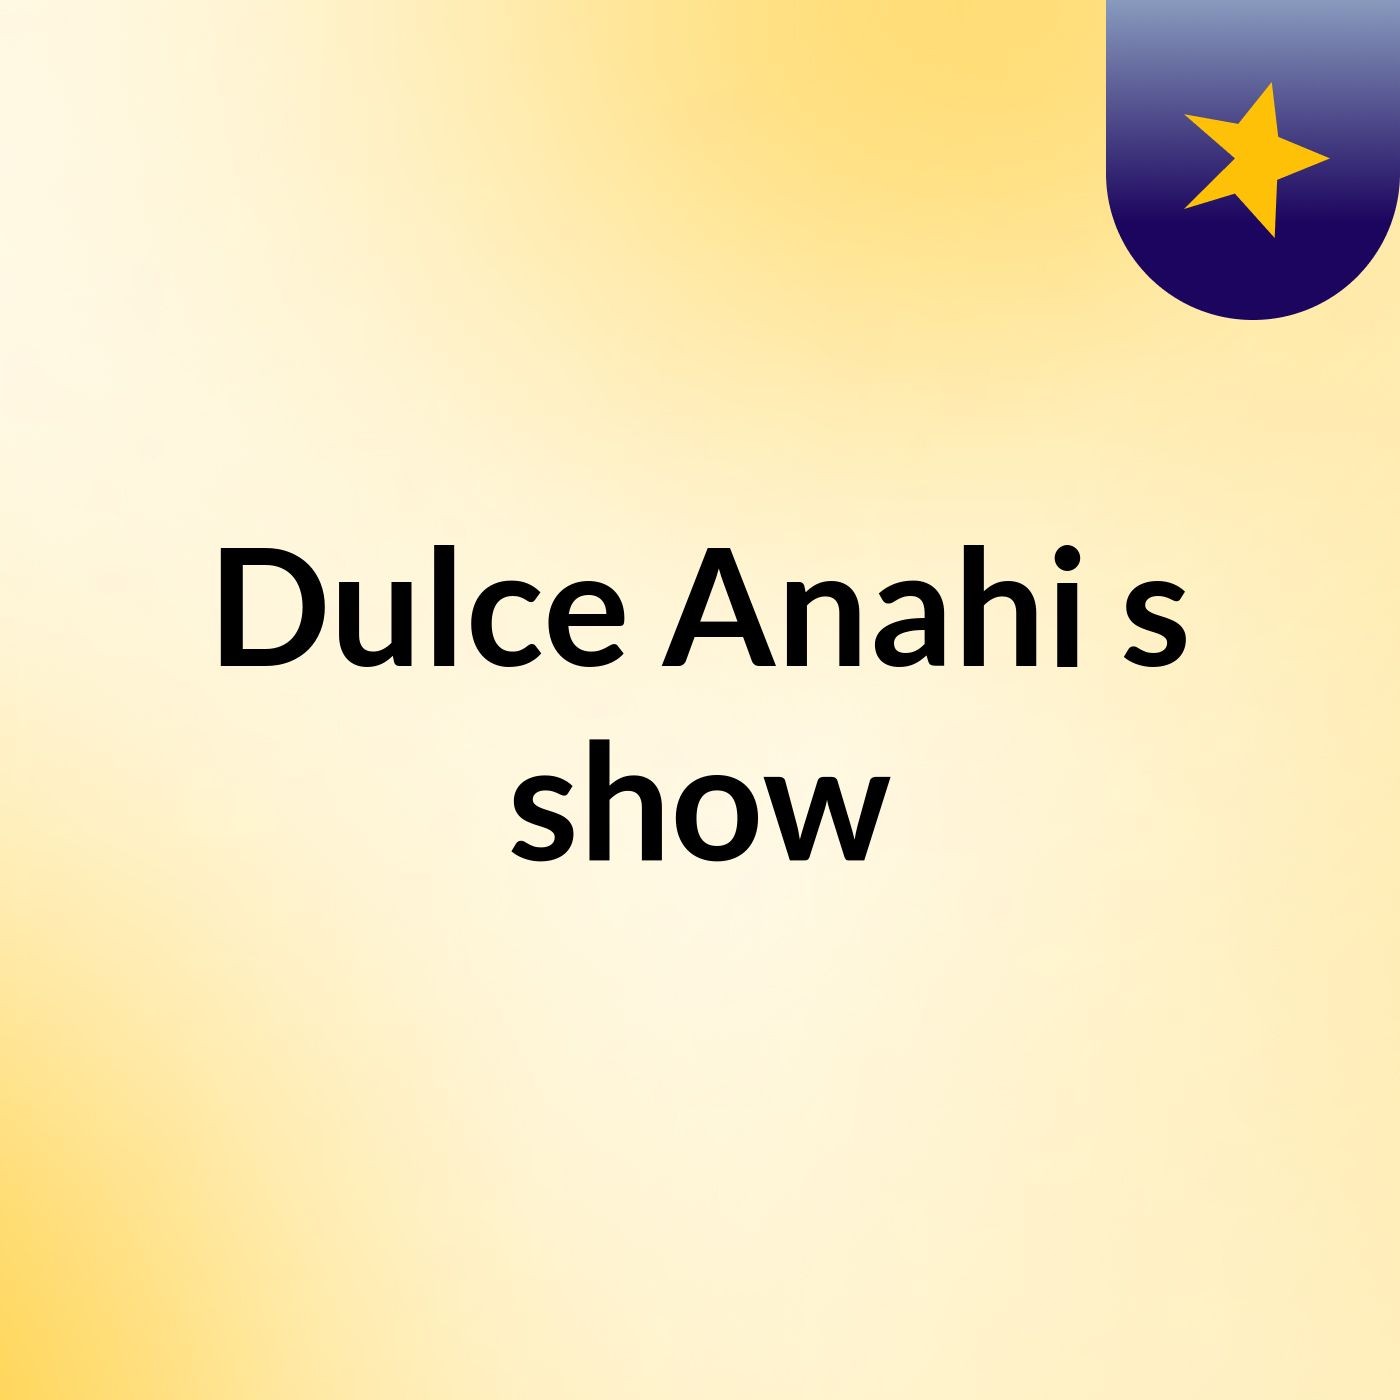 Dulce Anahi's show